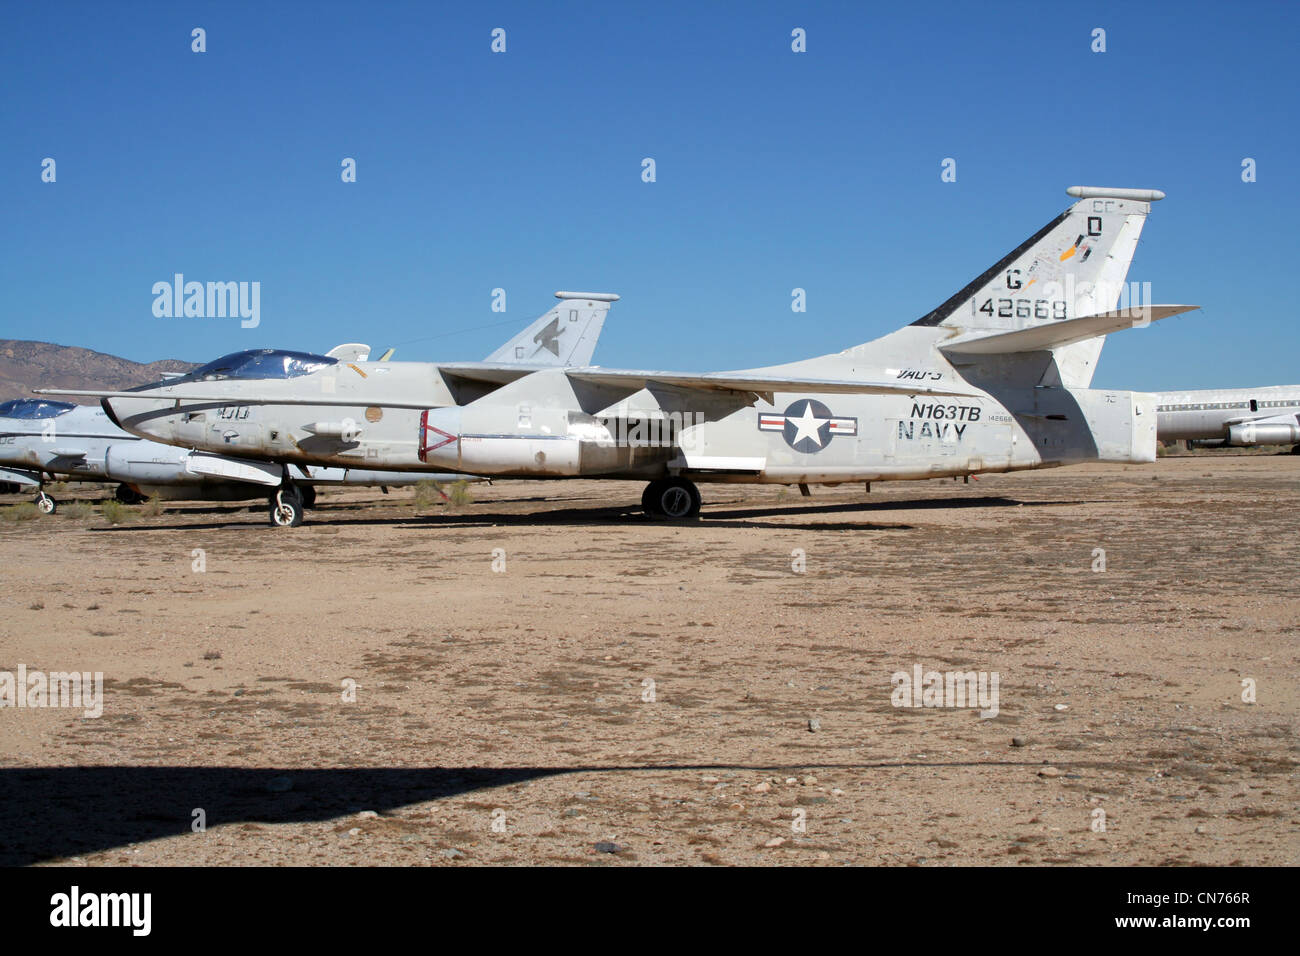 Us navy douglas a-3 skywarrior dans l'entreposage à l'aérodrome de Mojave, Californie, USA Banque D'Images